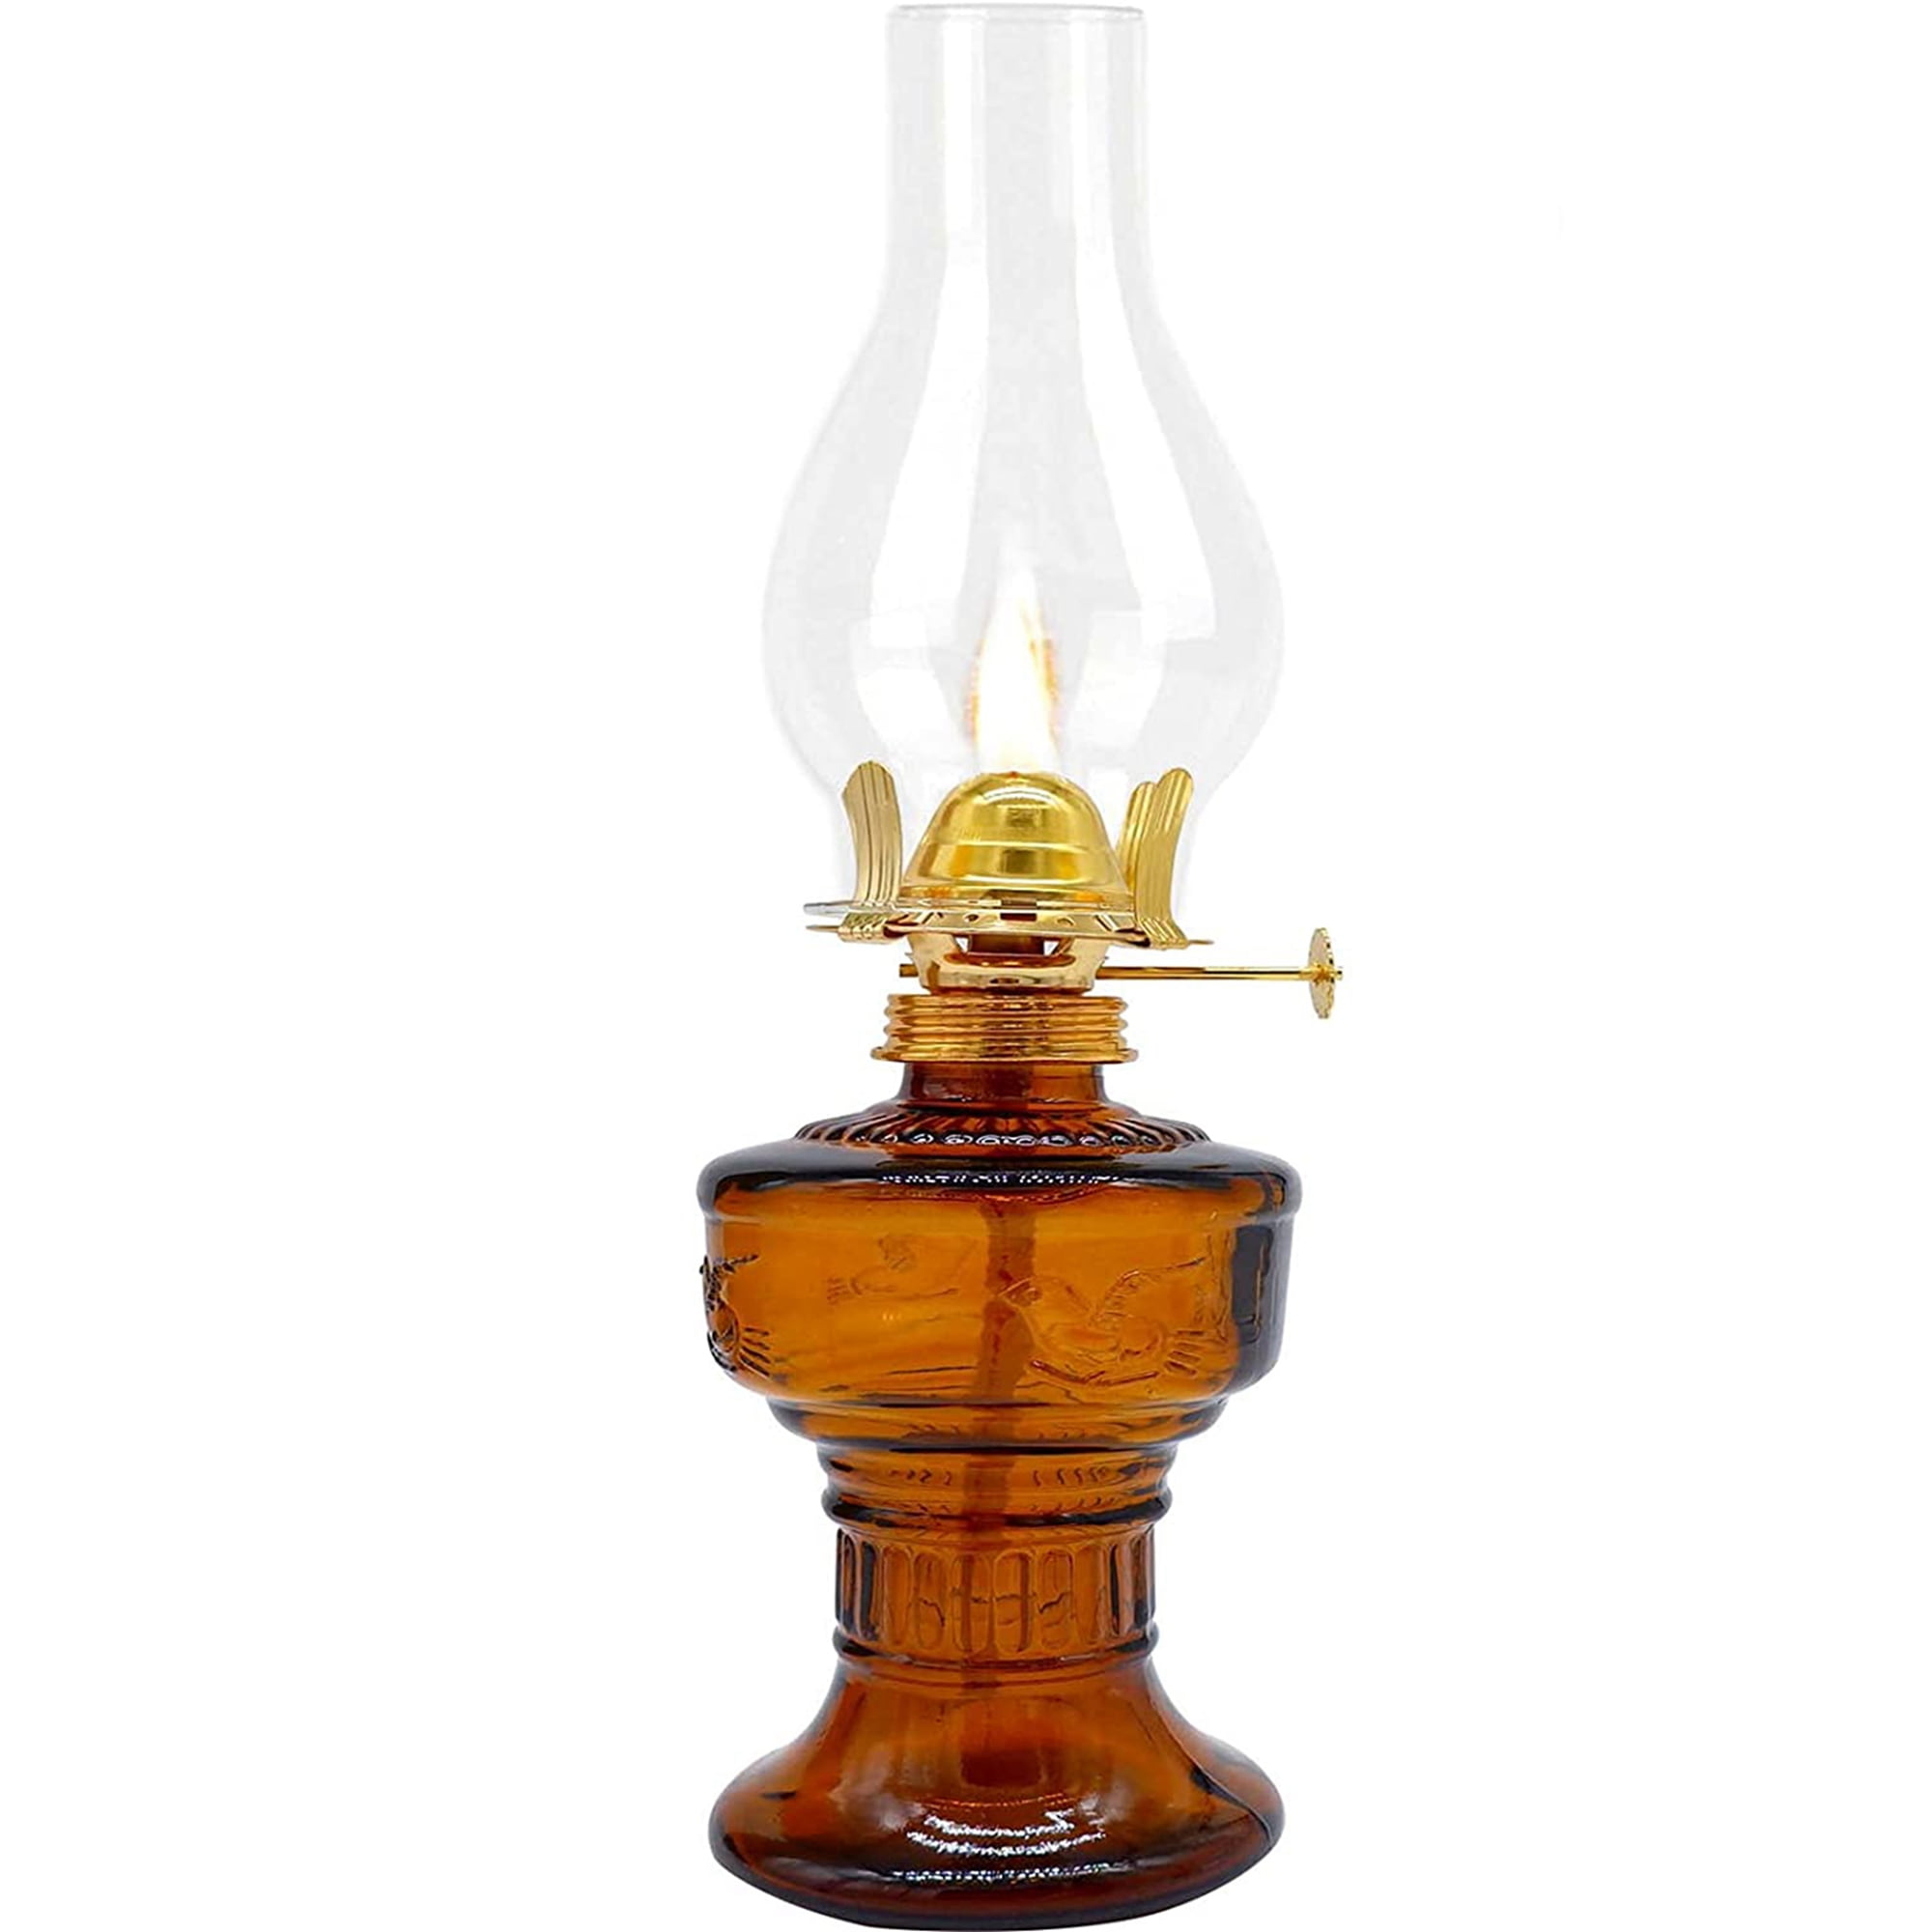 Kerosene Lamp Lanterns, Vintage Oil Lamp Lanterns